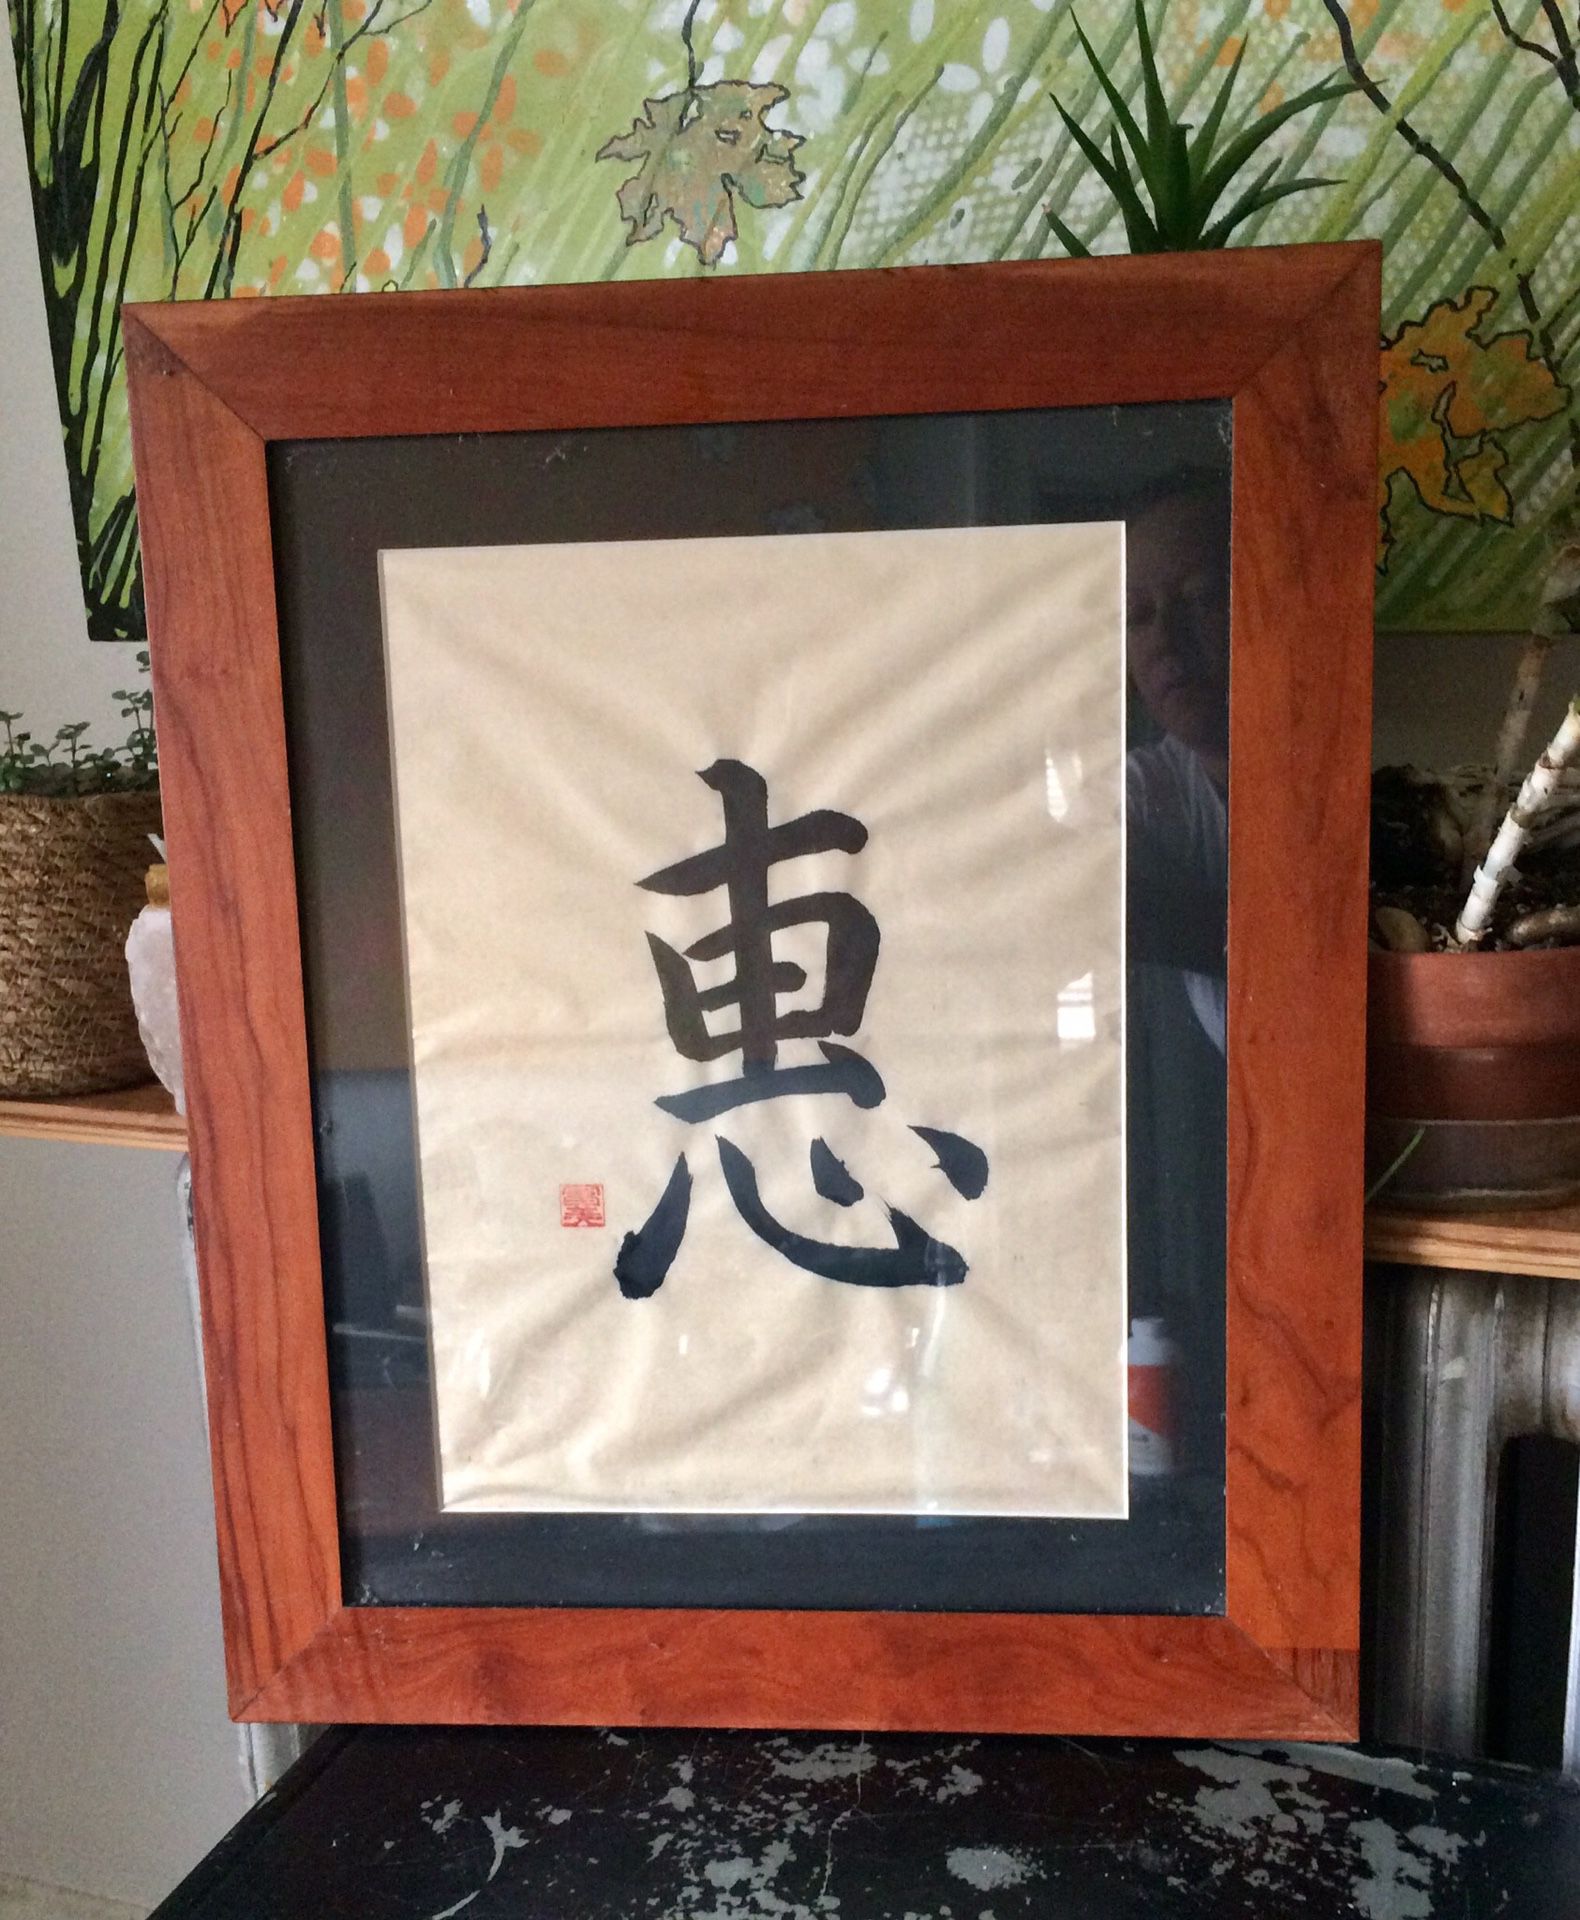 Framed Japanese character